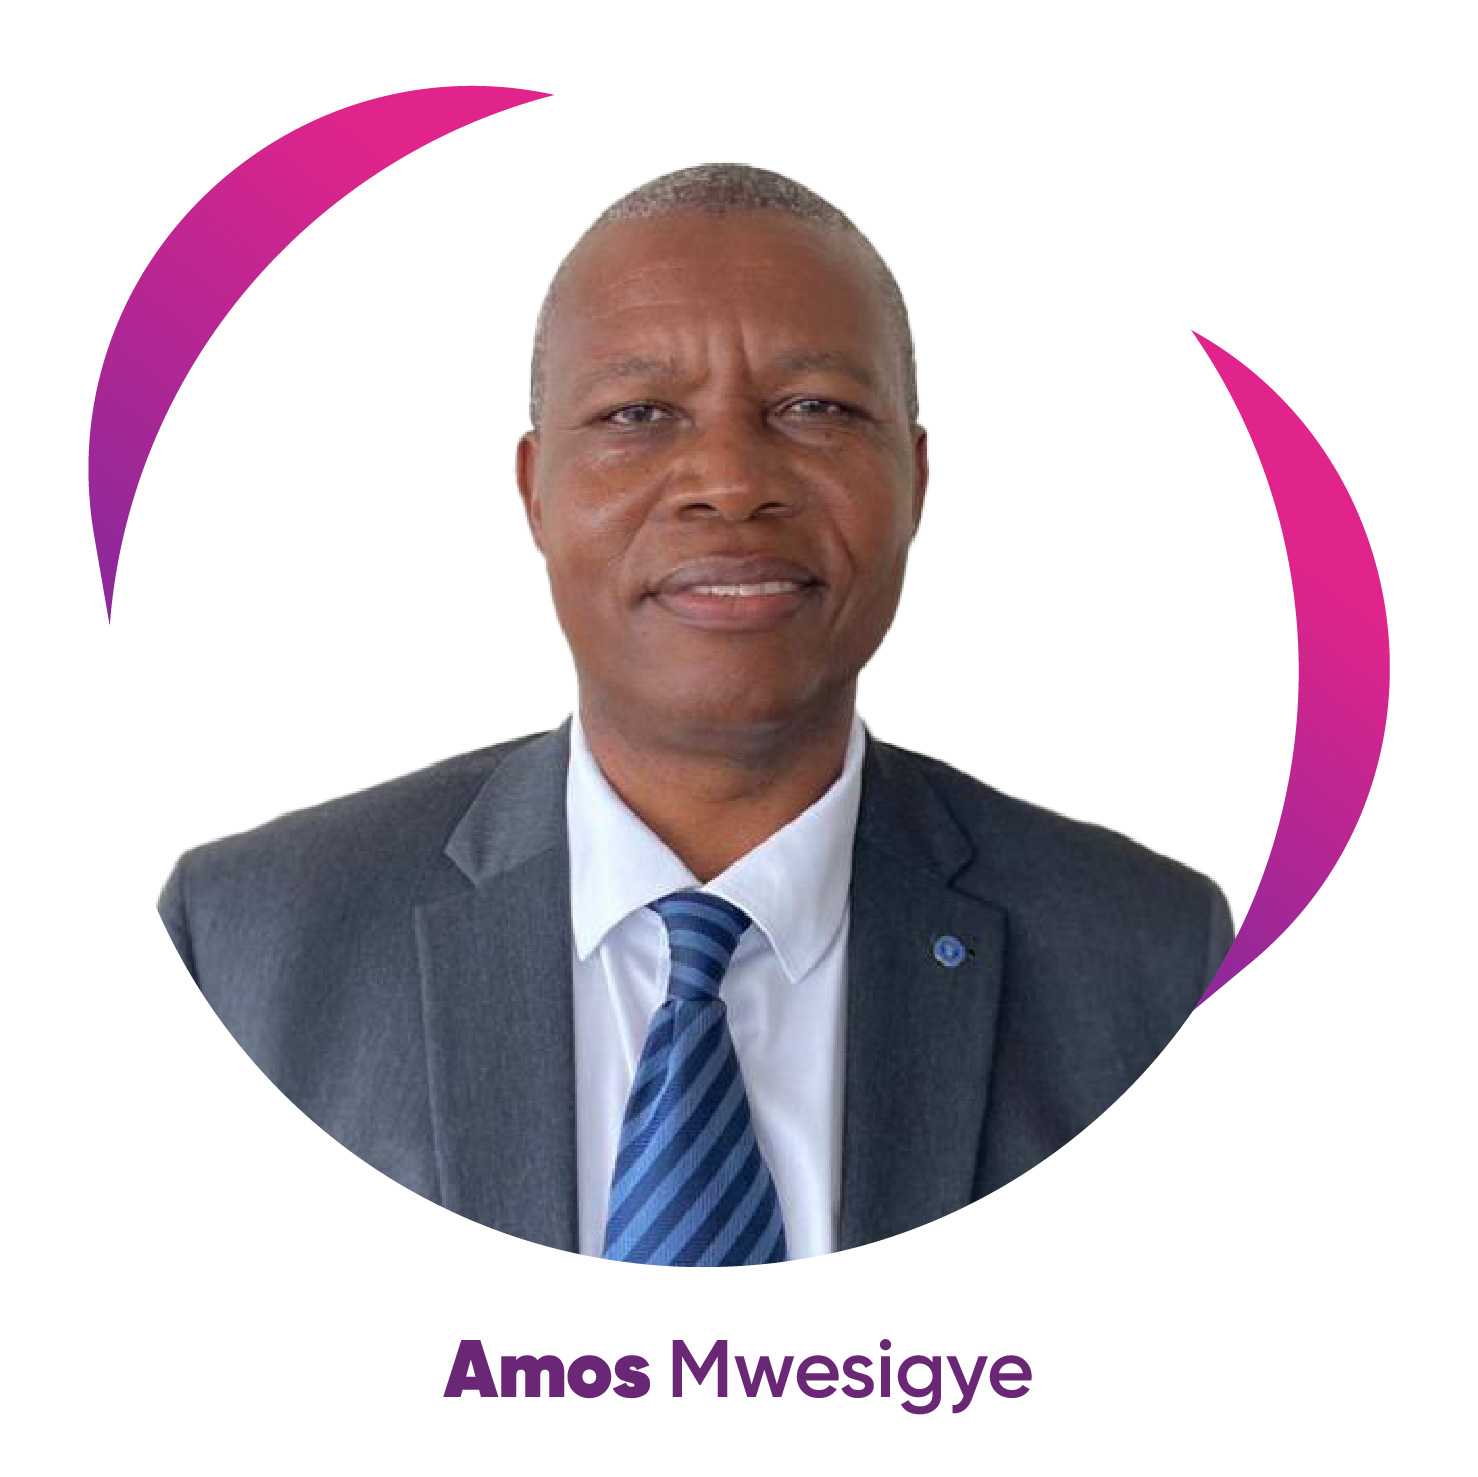 Amos Mwesigye